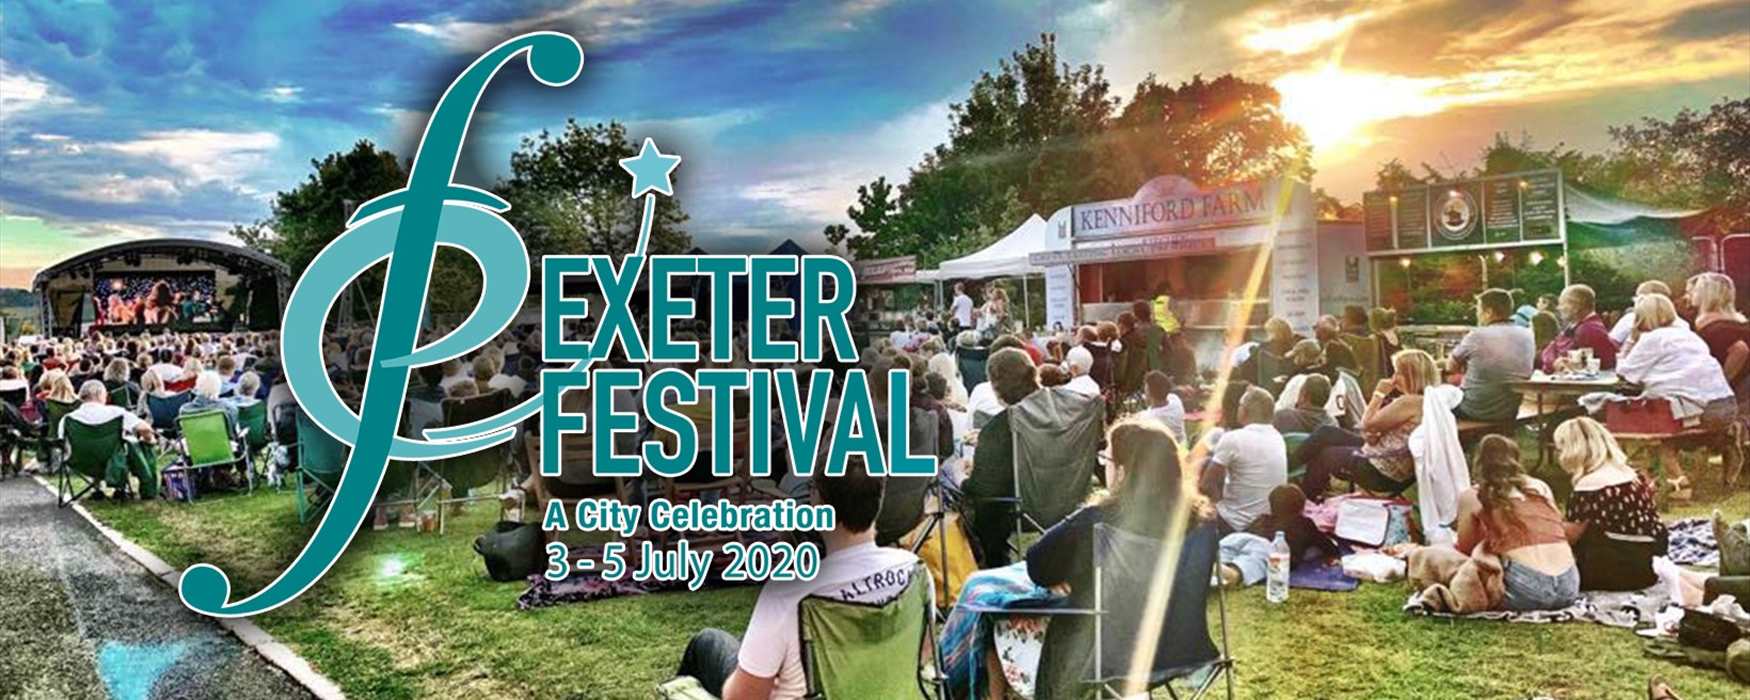 Exeter Festival 2020